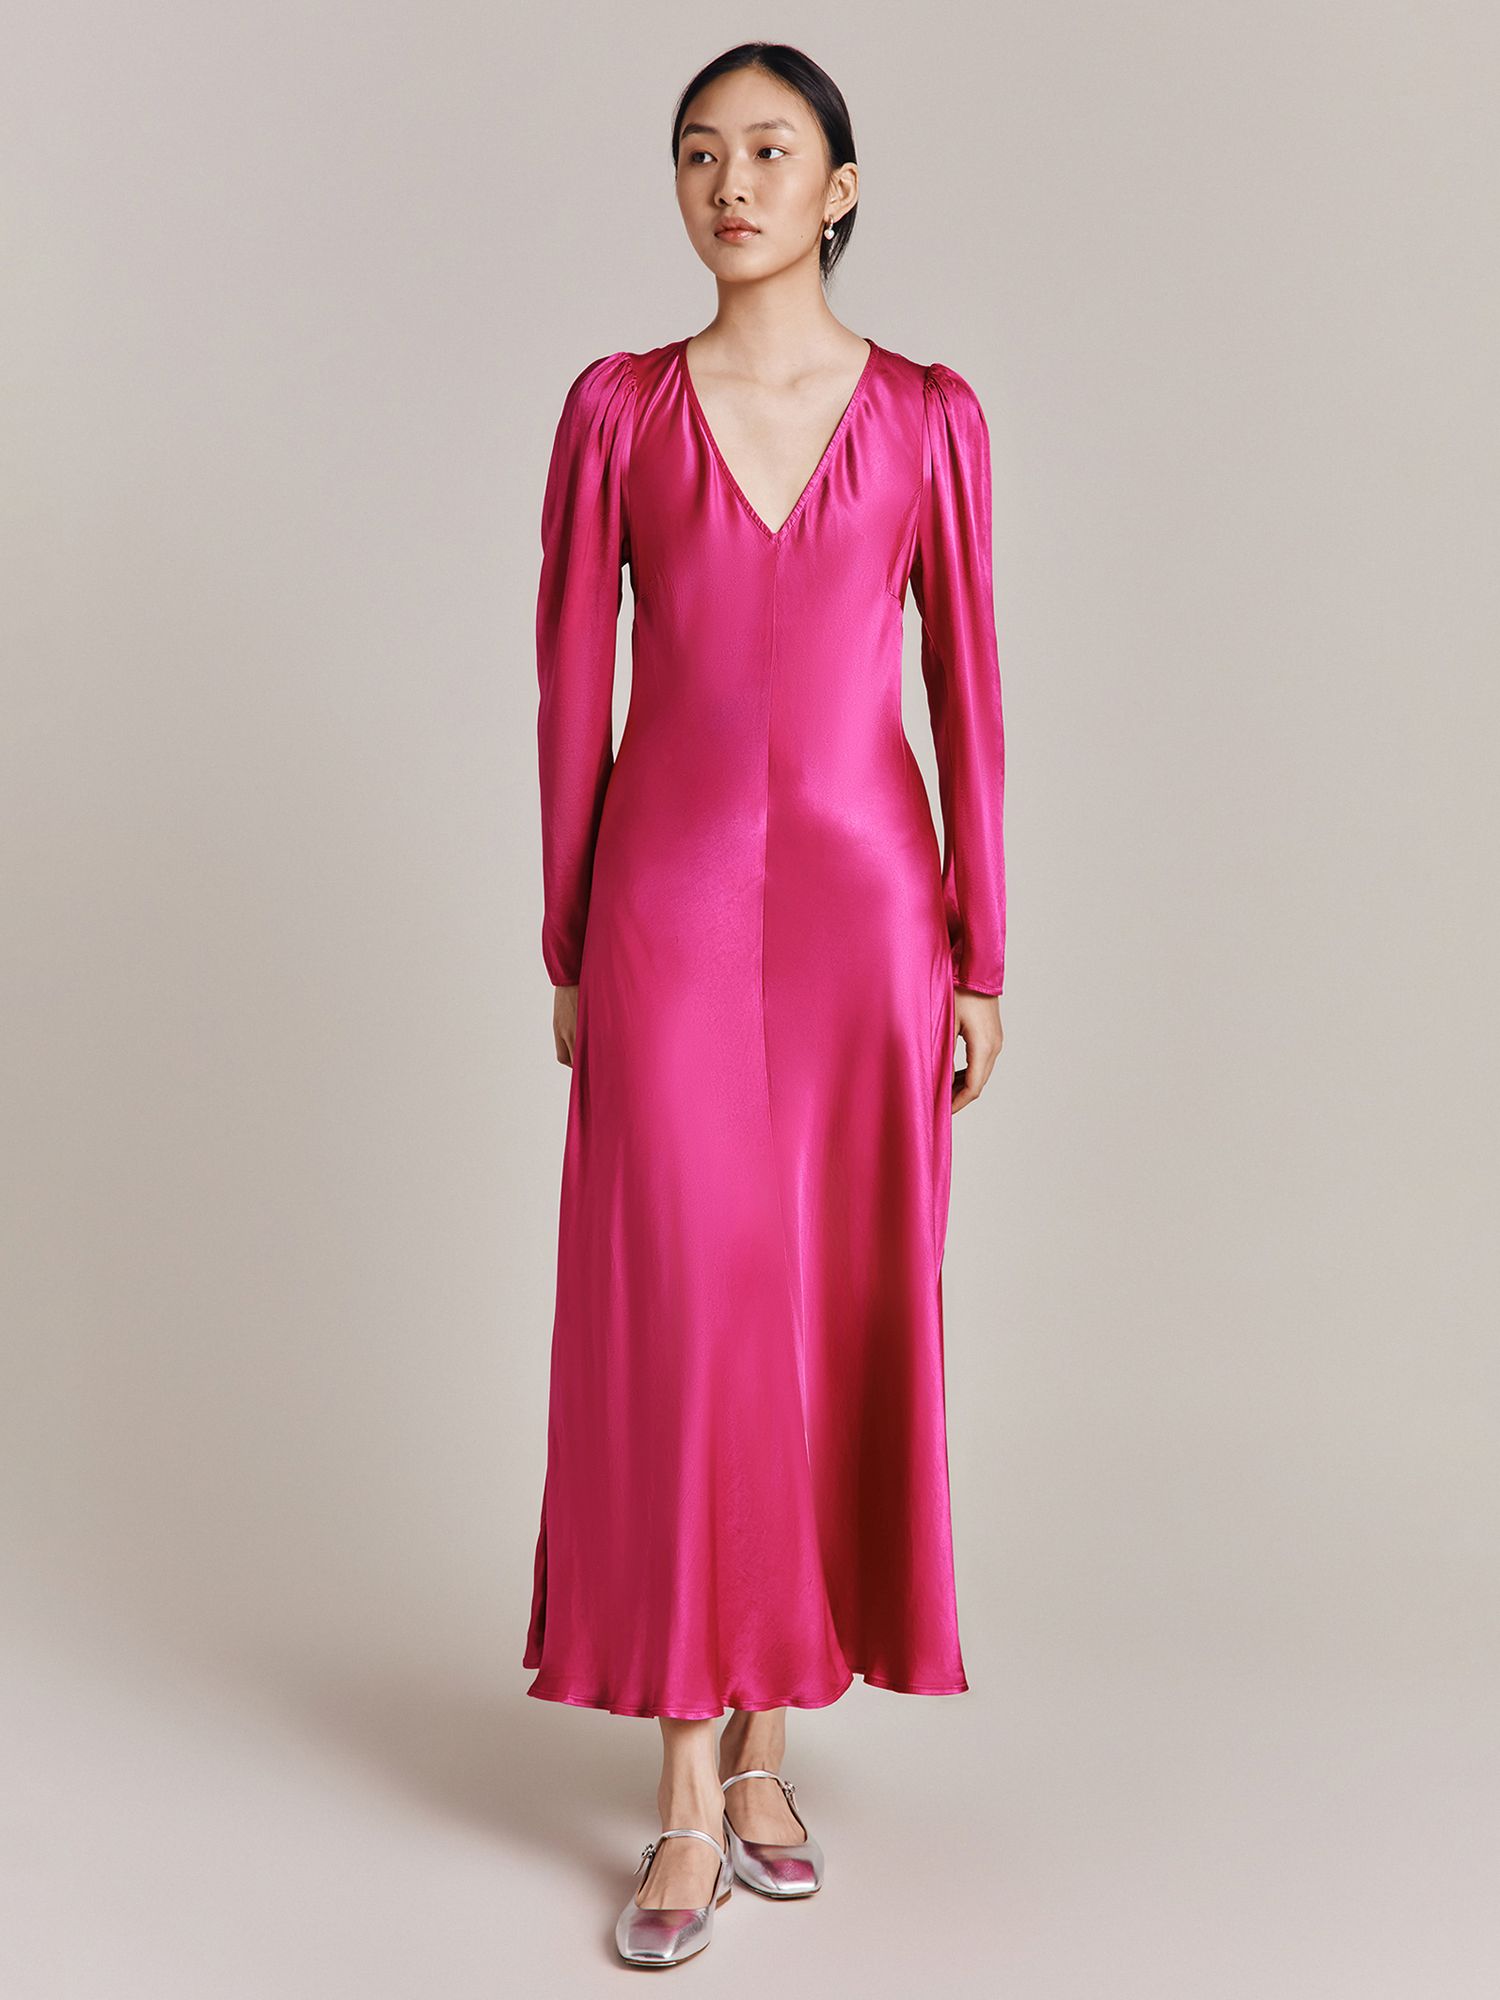 Ghost Etta Midi Satin Dress, Bright Pink, XS